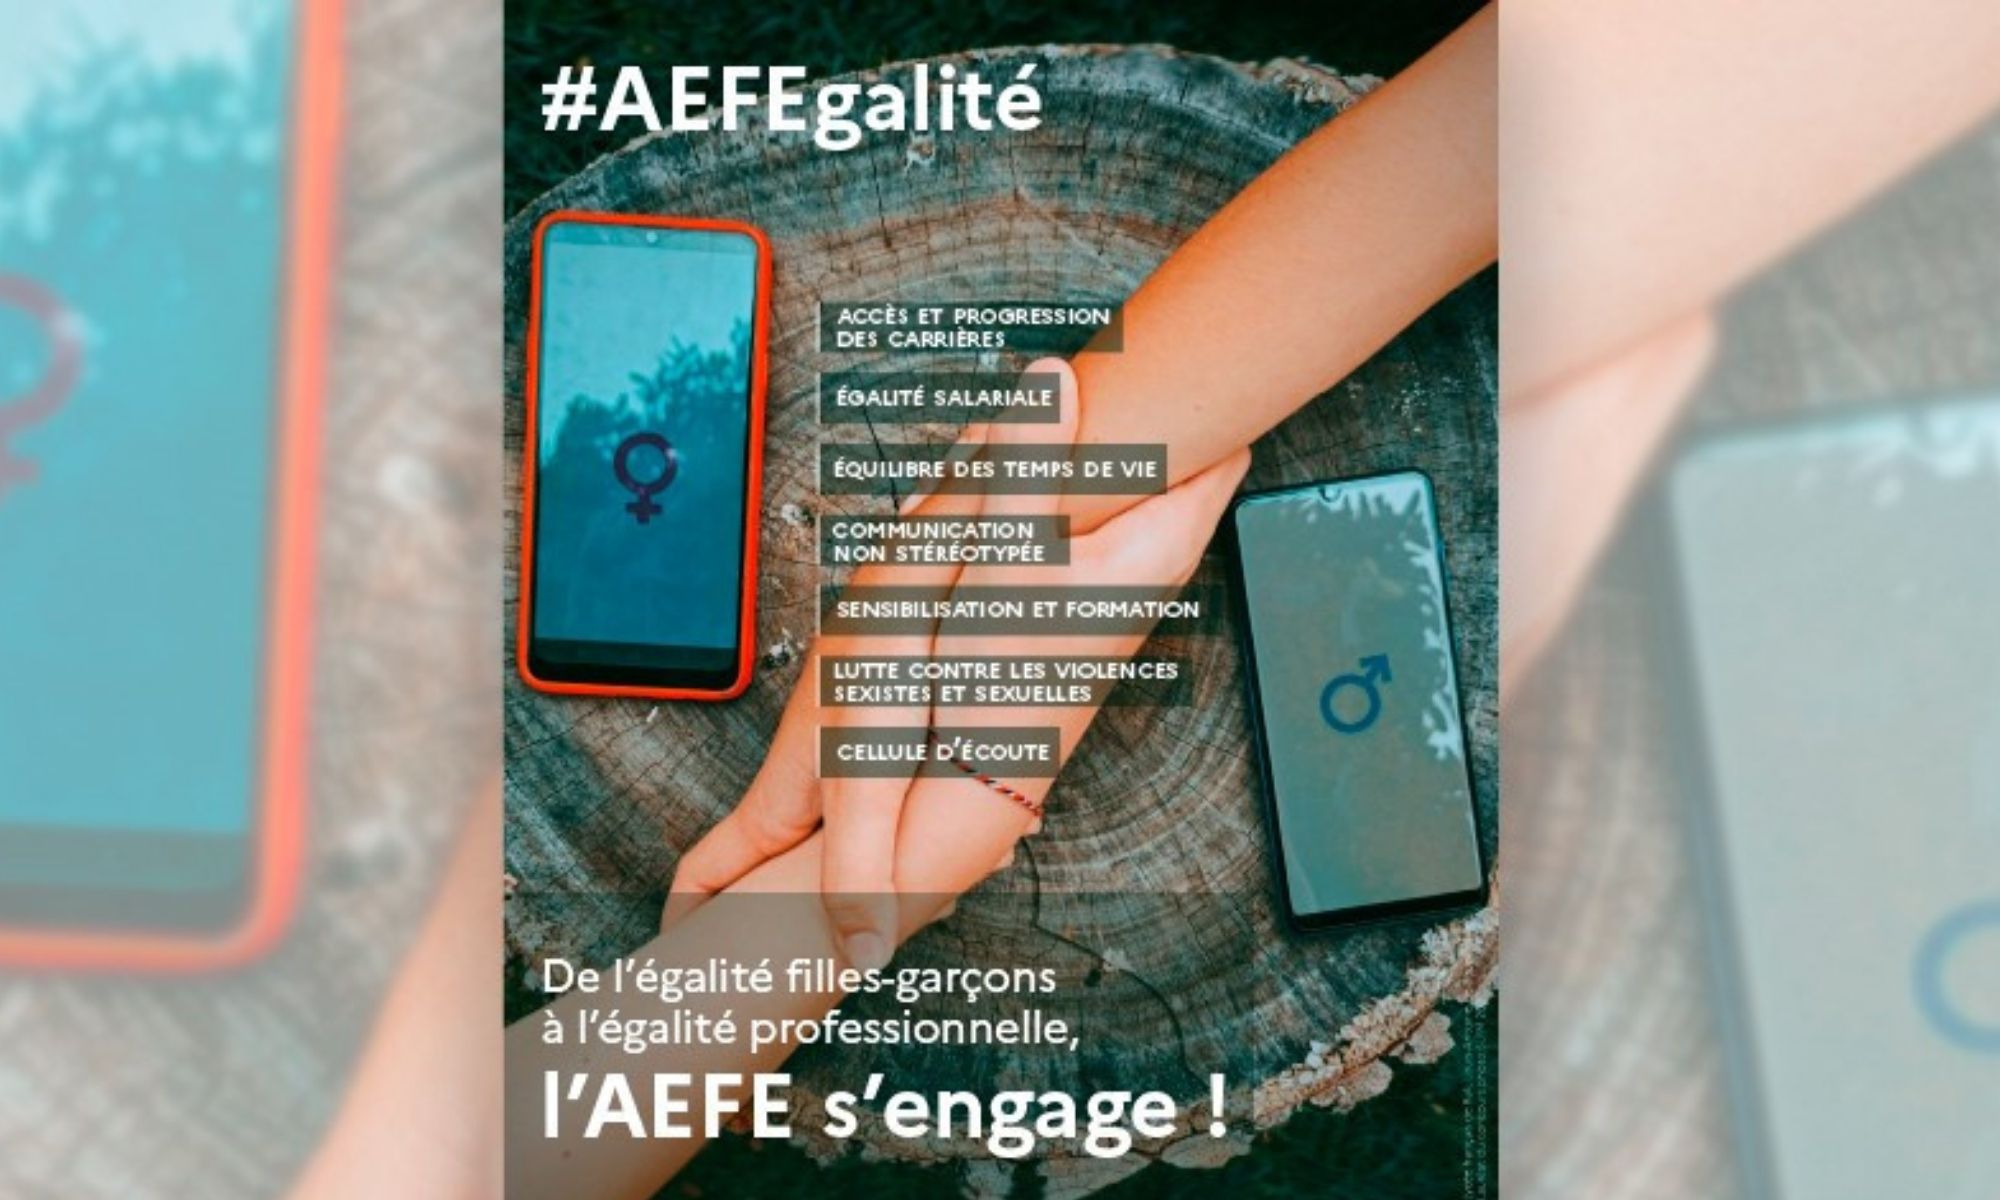 AEFE : Concours de l’affiche #AEFEgalité 2022